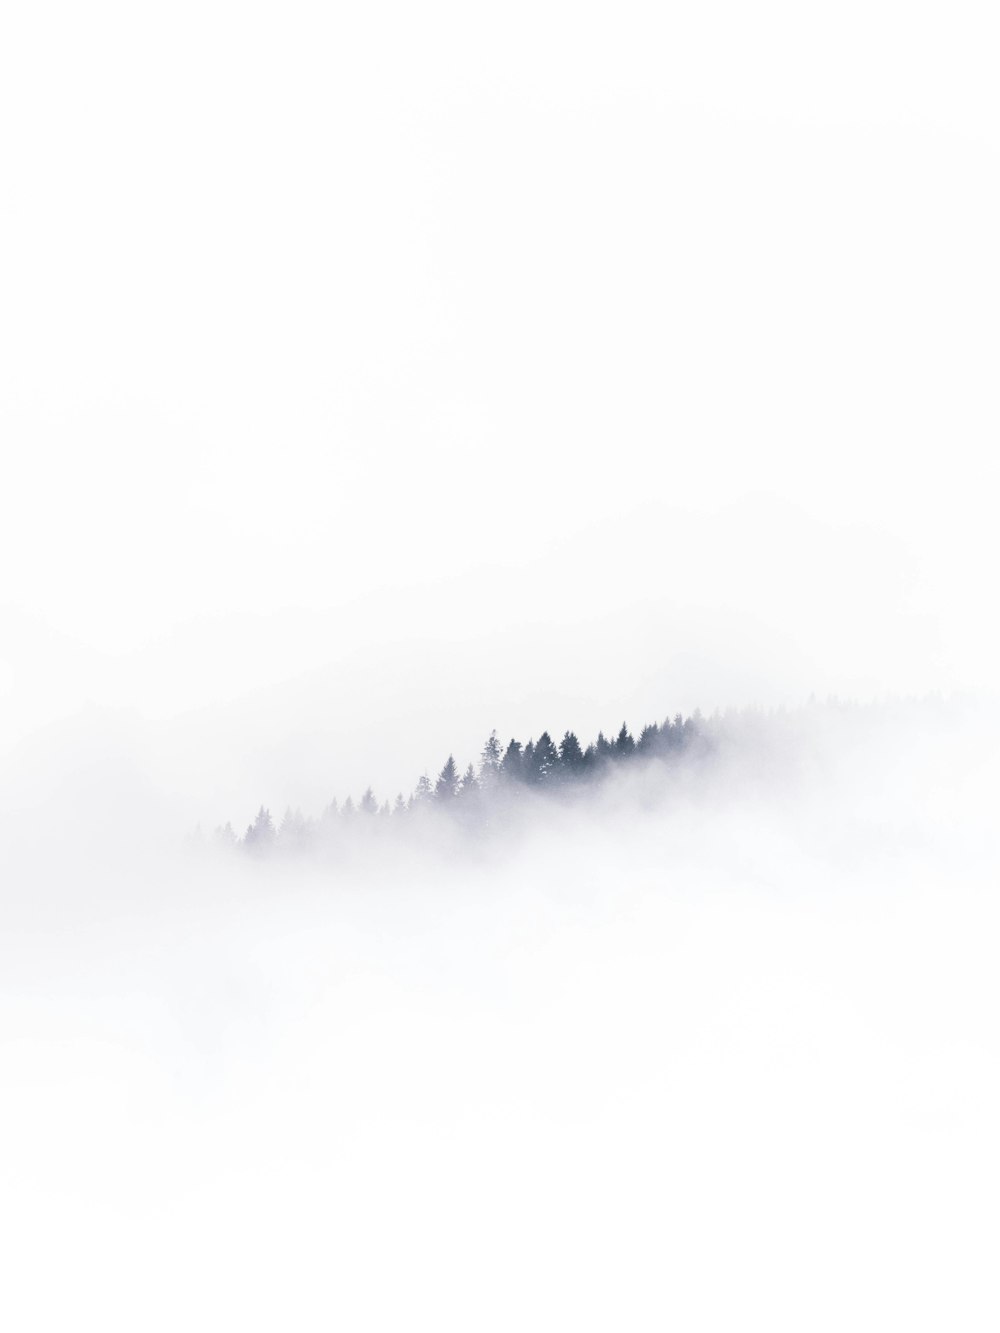 un paysage brumeux avec des arbres au loin